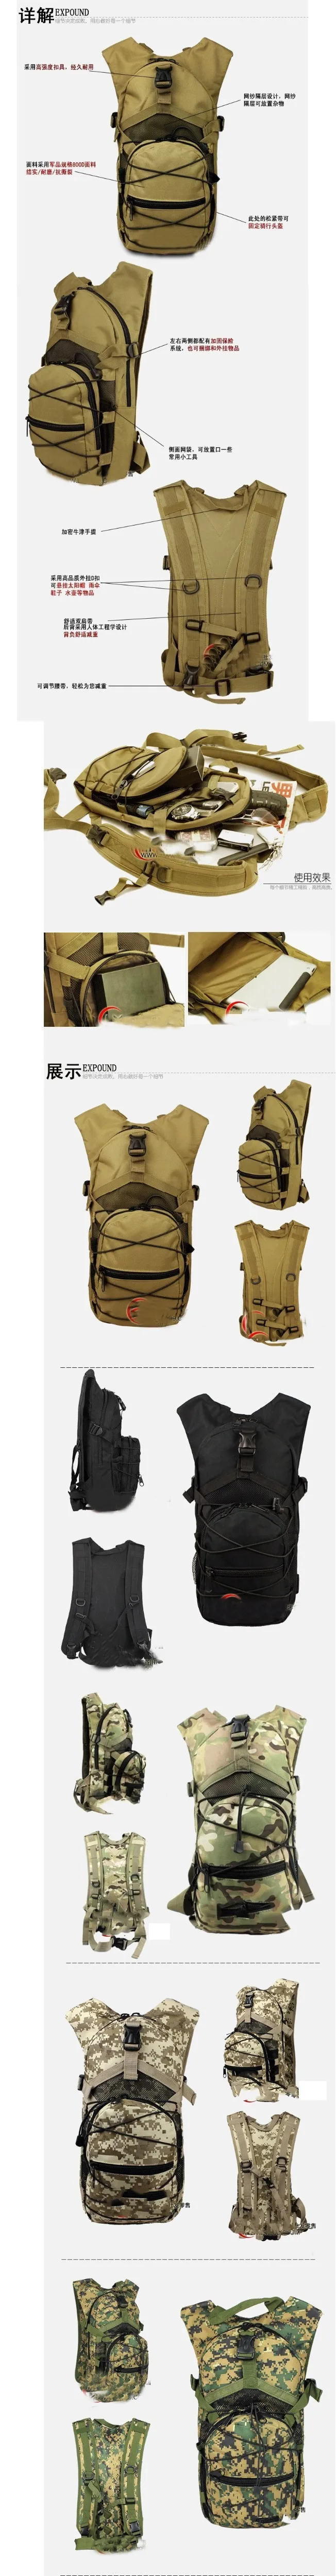 Новинка 201, тактическая сумка через плечо, армейское снаряжение, дорожная сумка, ds kit, uk gear, voodoo, рюкзак, sac tactique